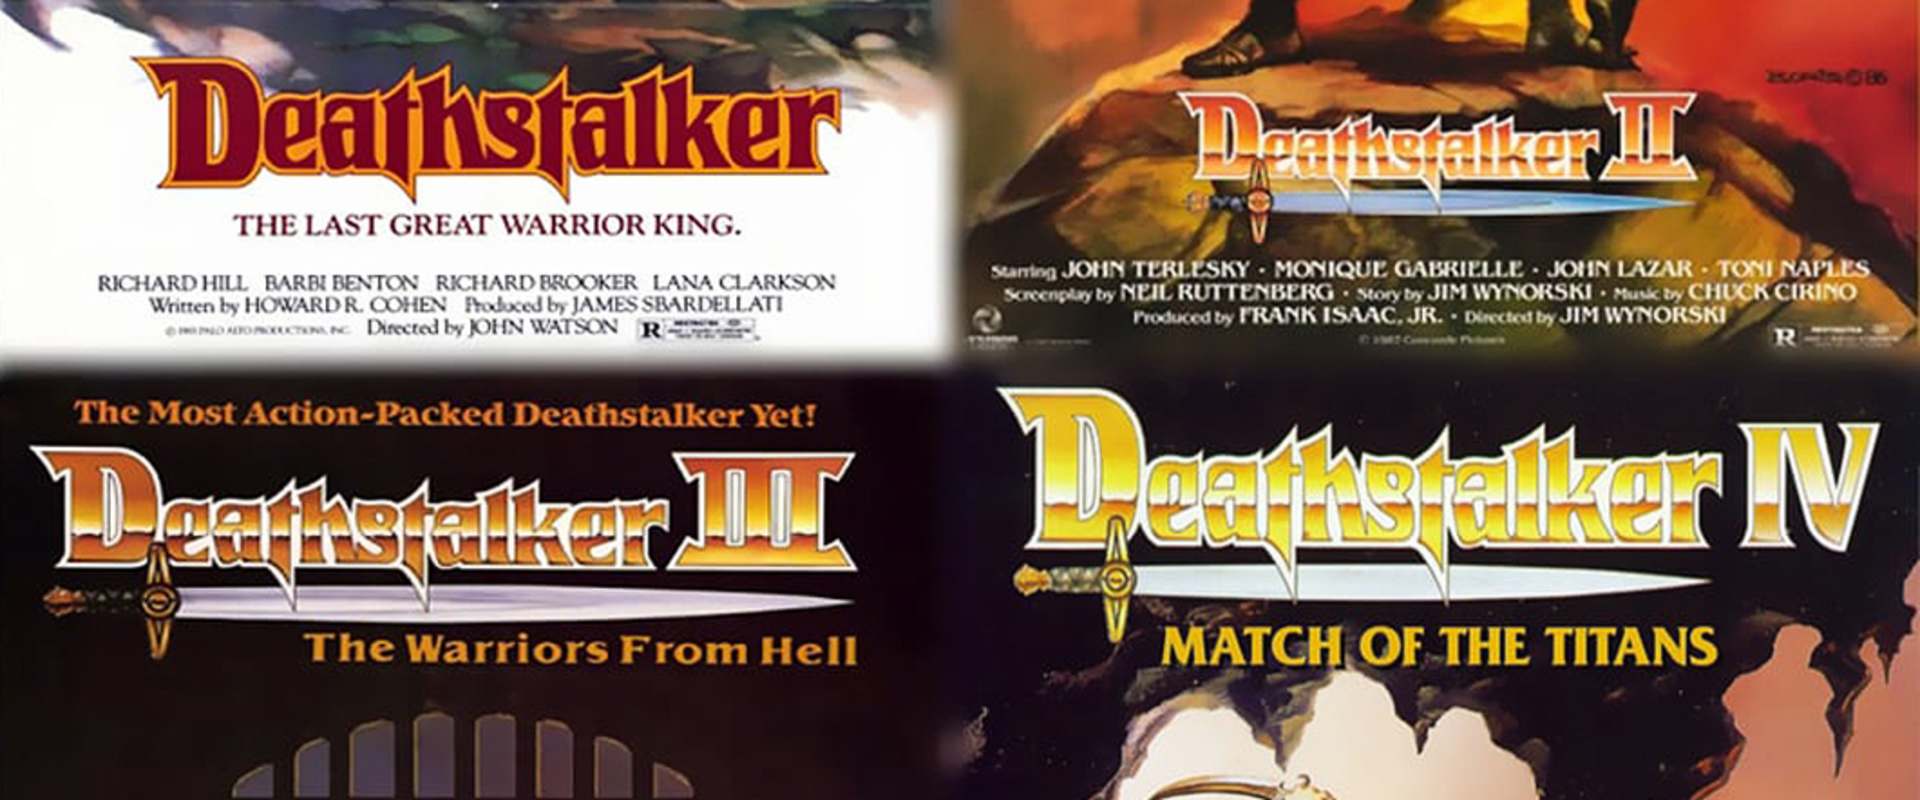 Deathstalker IV: Match of Titans background 1